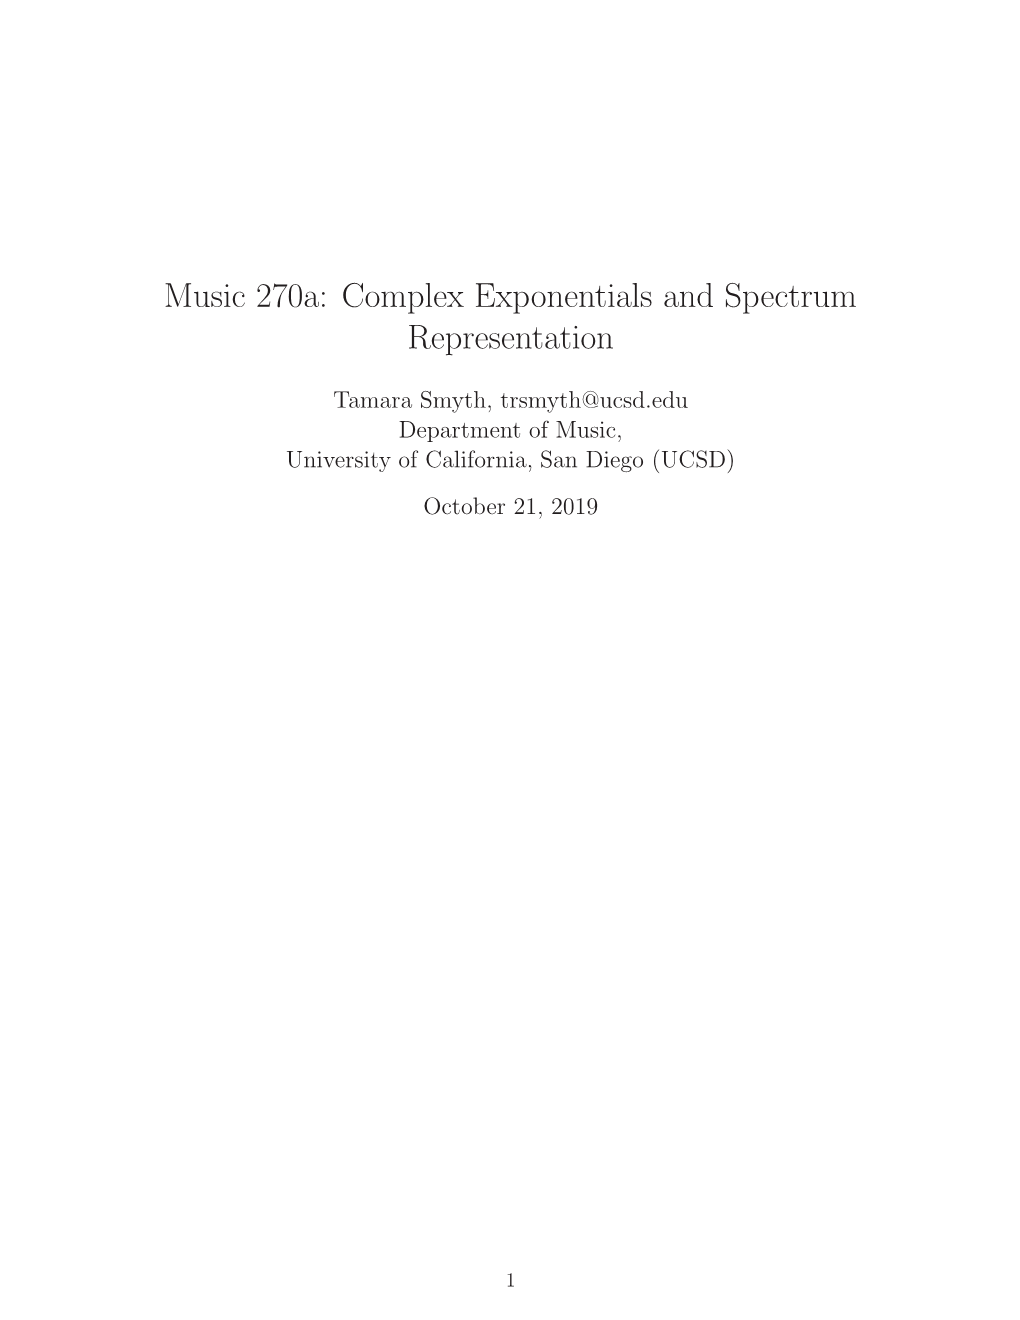 Complex Exponentials and Spectrum Representation